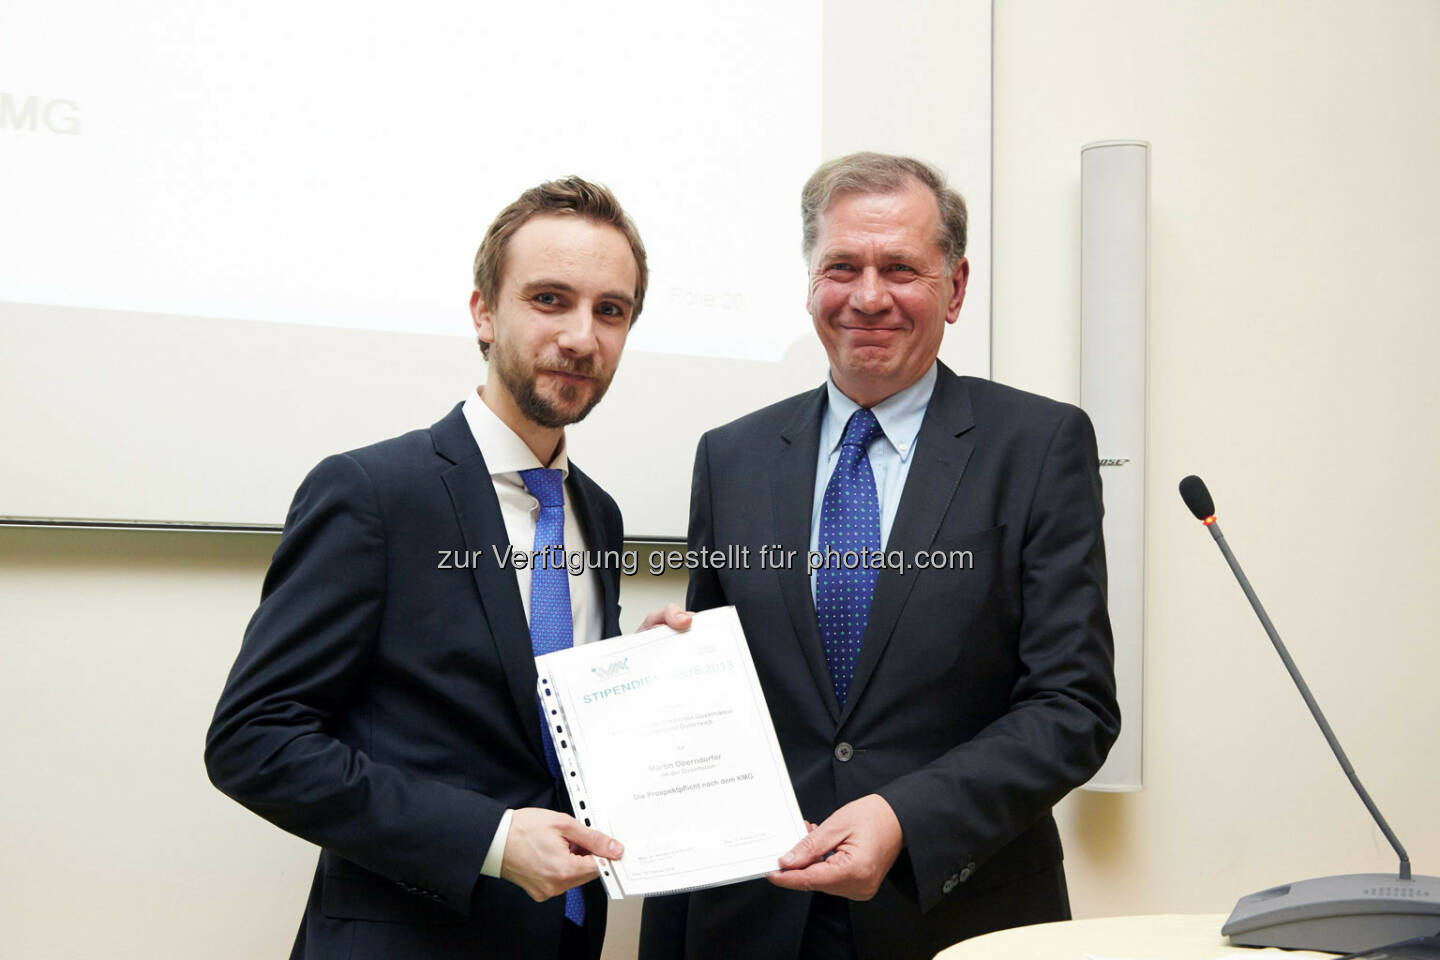 Martin Oberndorfer - Anerkennungspreis für die Dissertation „Die Prospektpflicht nach dem KMG“ im Wert von 1.000 Euro